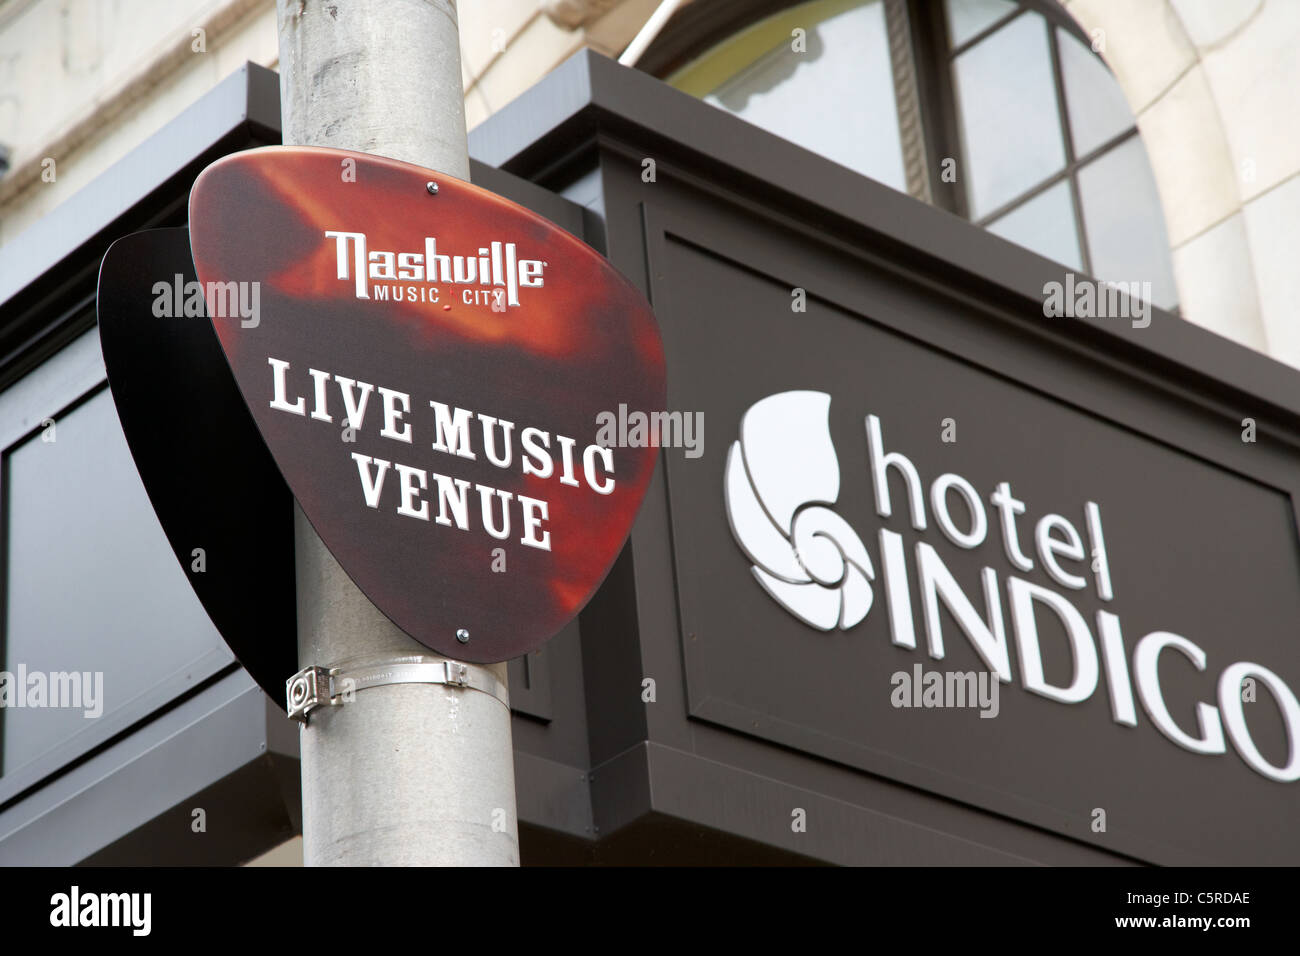 Live music venue signer à l'extérieur de l'hôtel Indigo Nashville Tennessee USA Banque D'Images